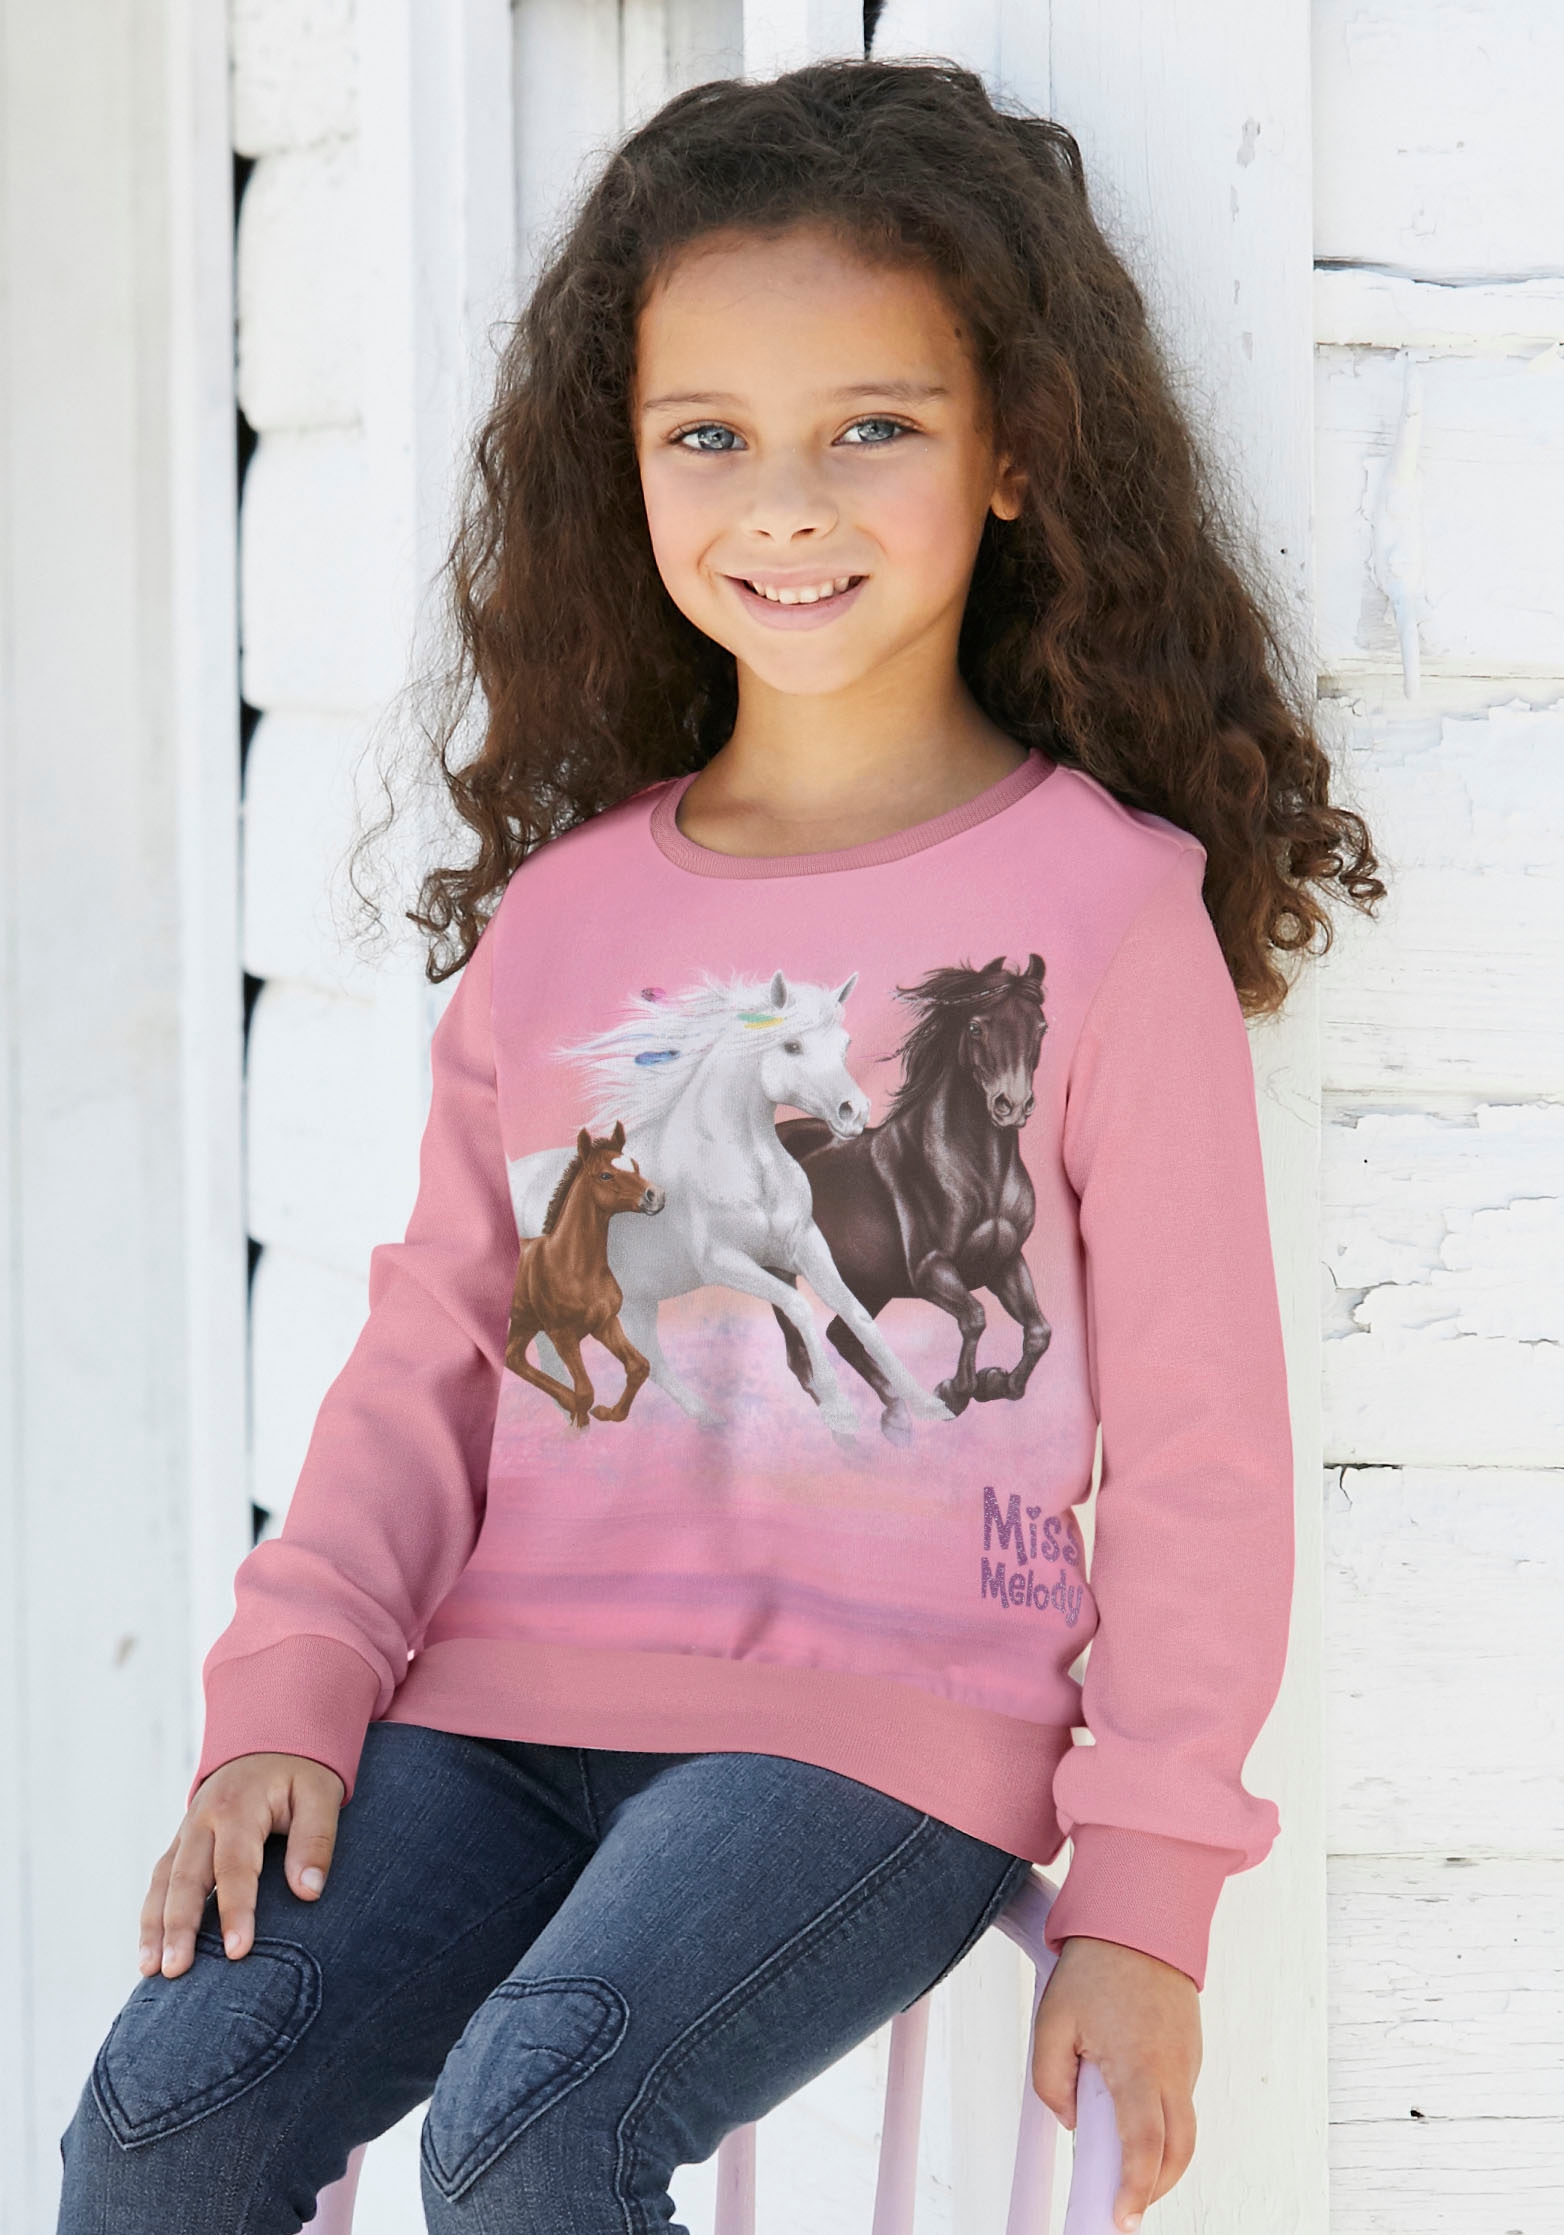 Miss Melody Longsweatshirt, für Pferdefreunde online bei OTTO